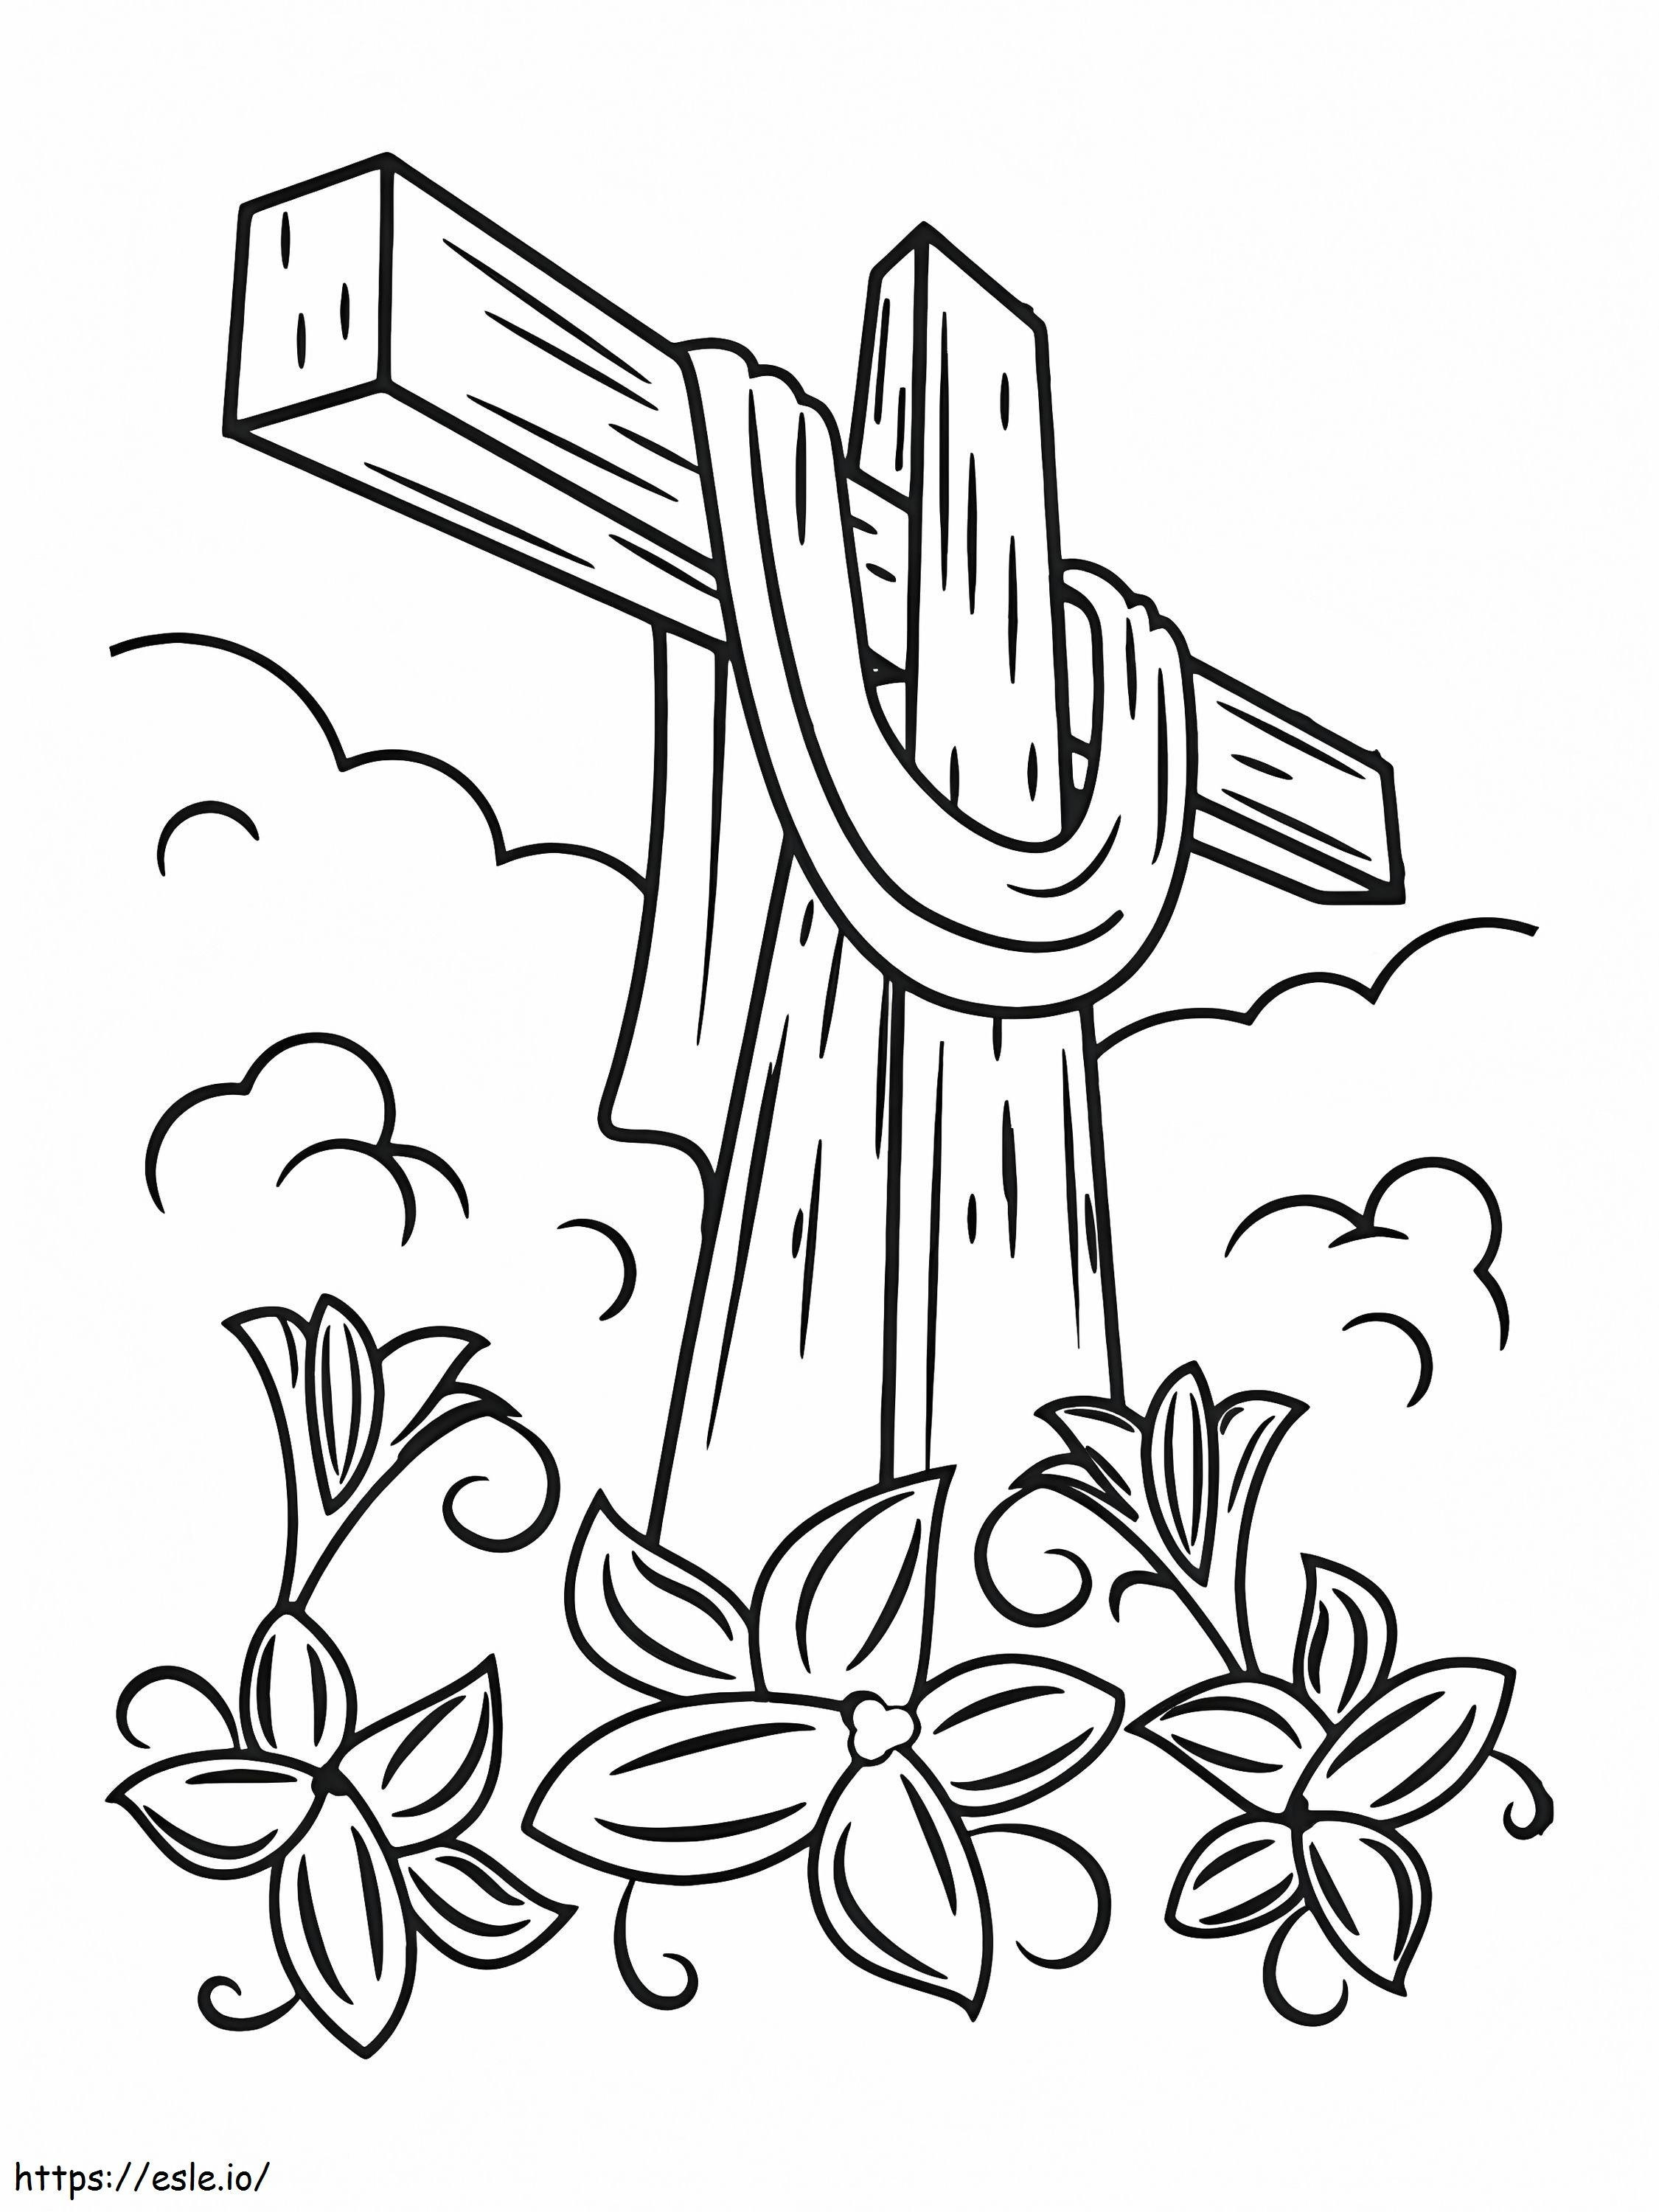 Wielkanocny Święty Krzyż kolorowanka